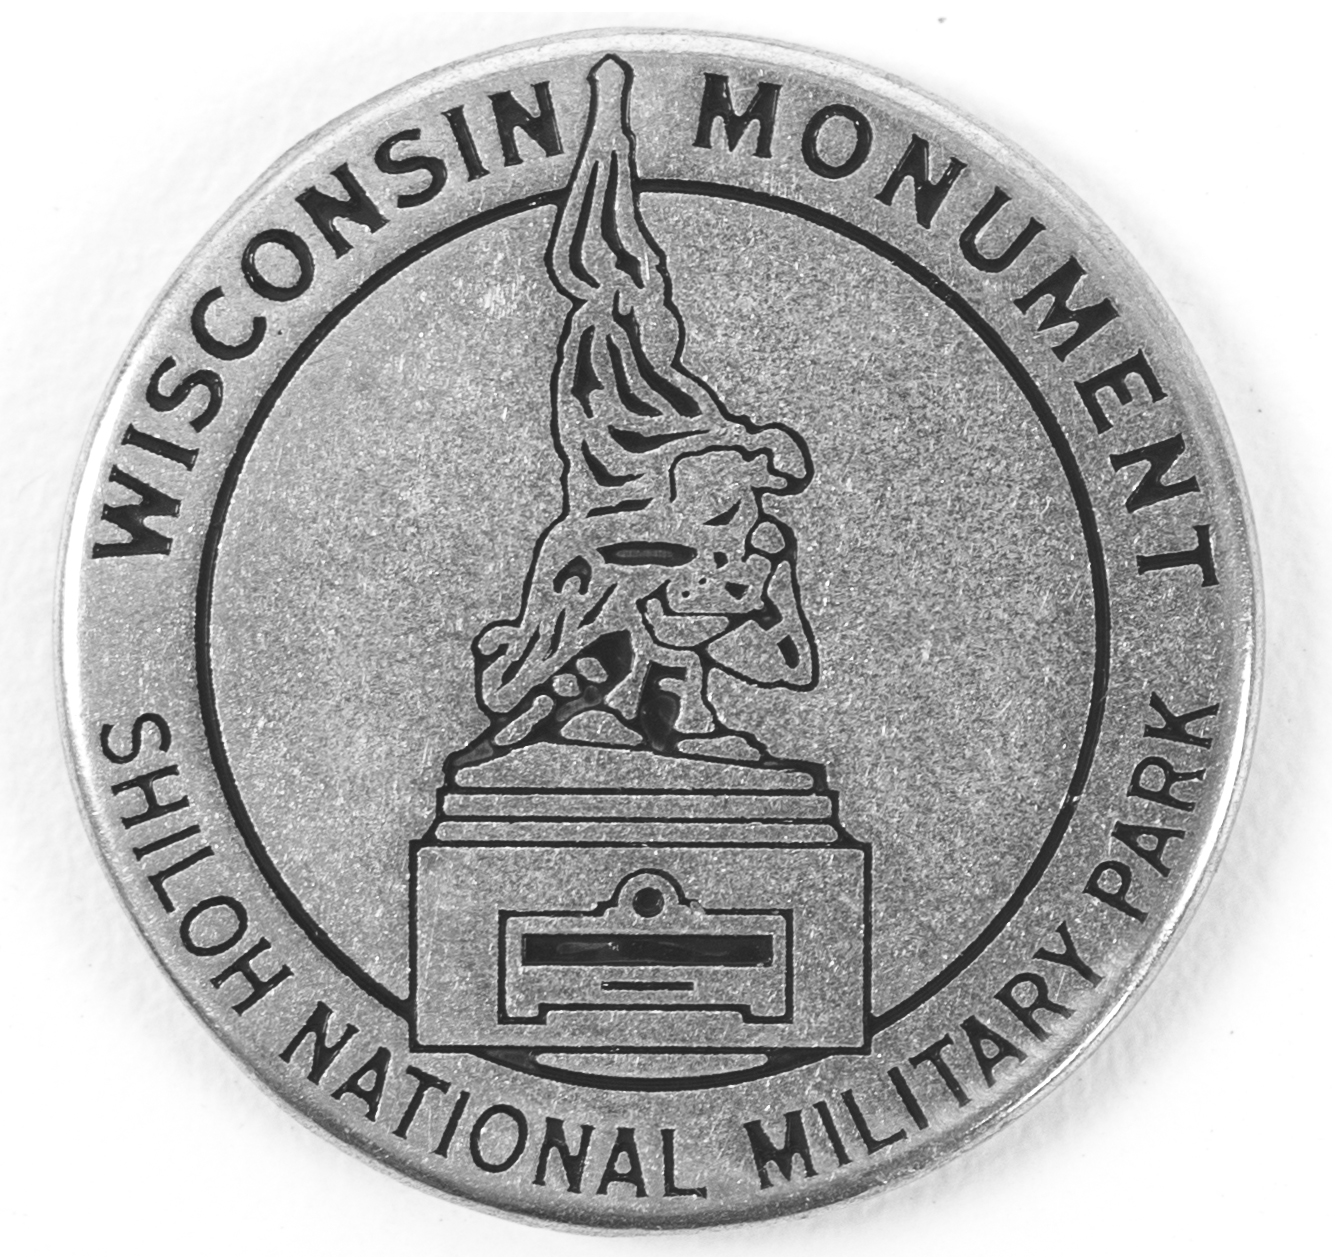 Shiloh National Military Park  token back